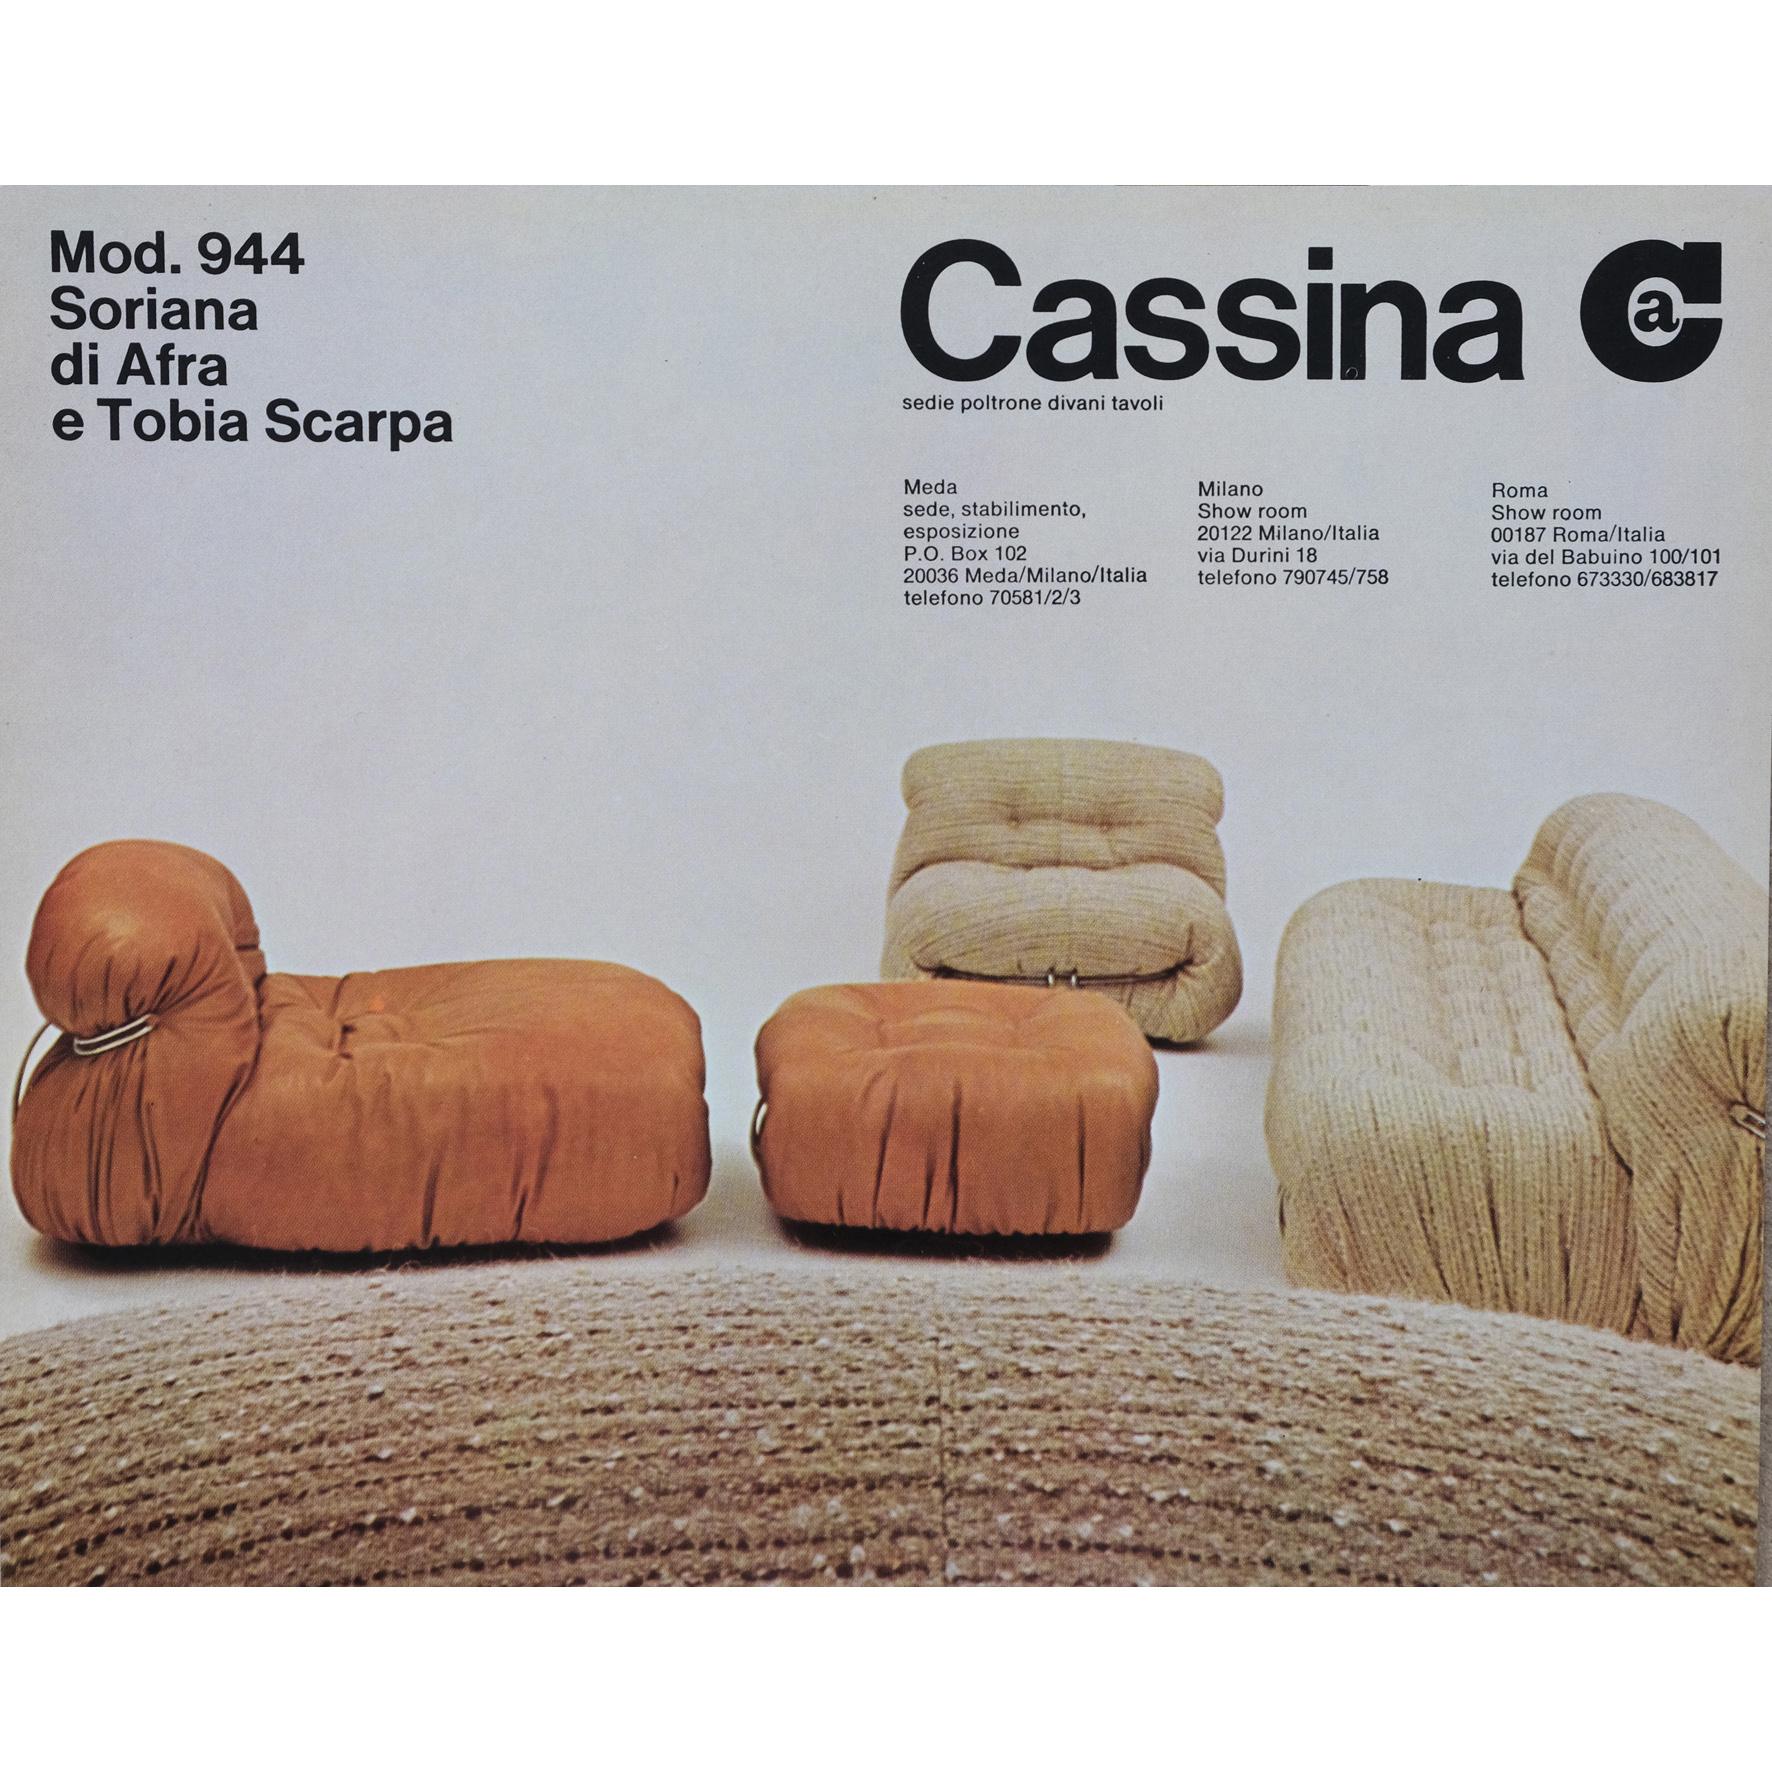 Afra & Tobia Scarpa, A large sofa, 